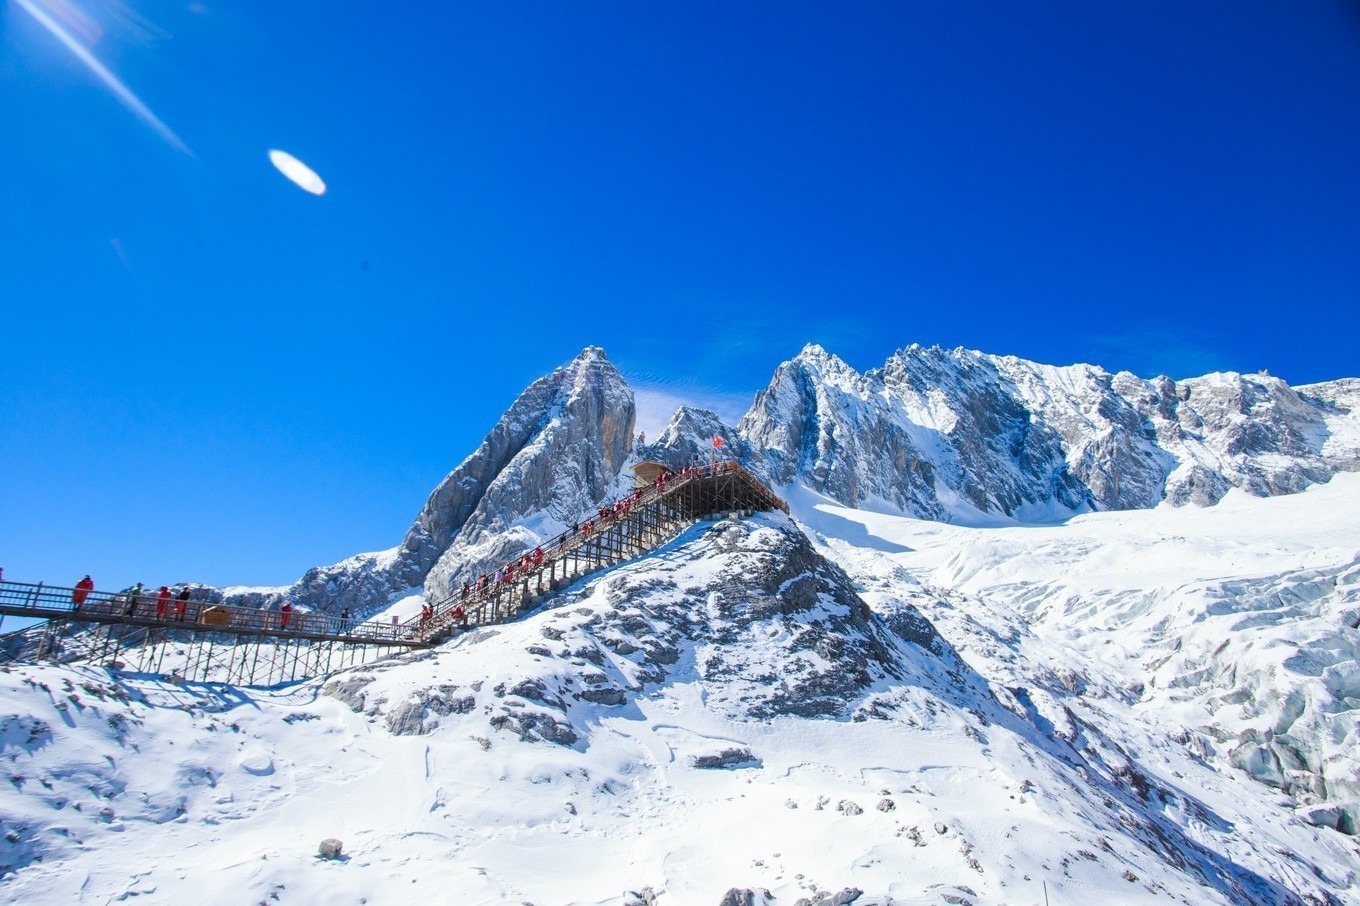 Du lịch Trung Quốc ngắm những ngọn núi tuyết hùng vĩ bậc nhất thế giới -  iVIVU.com